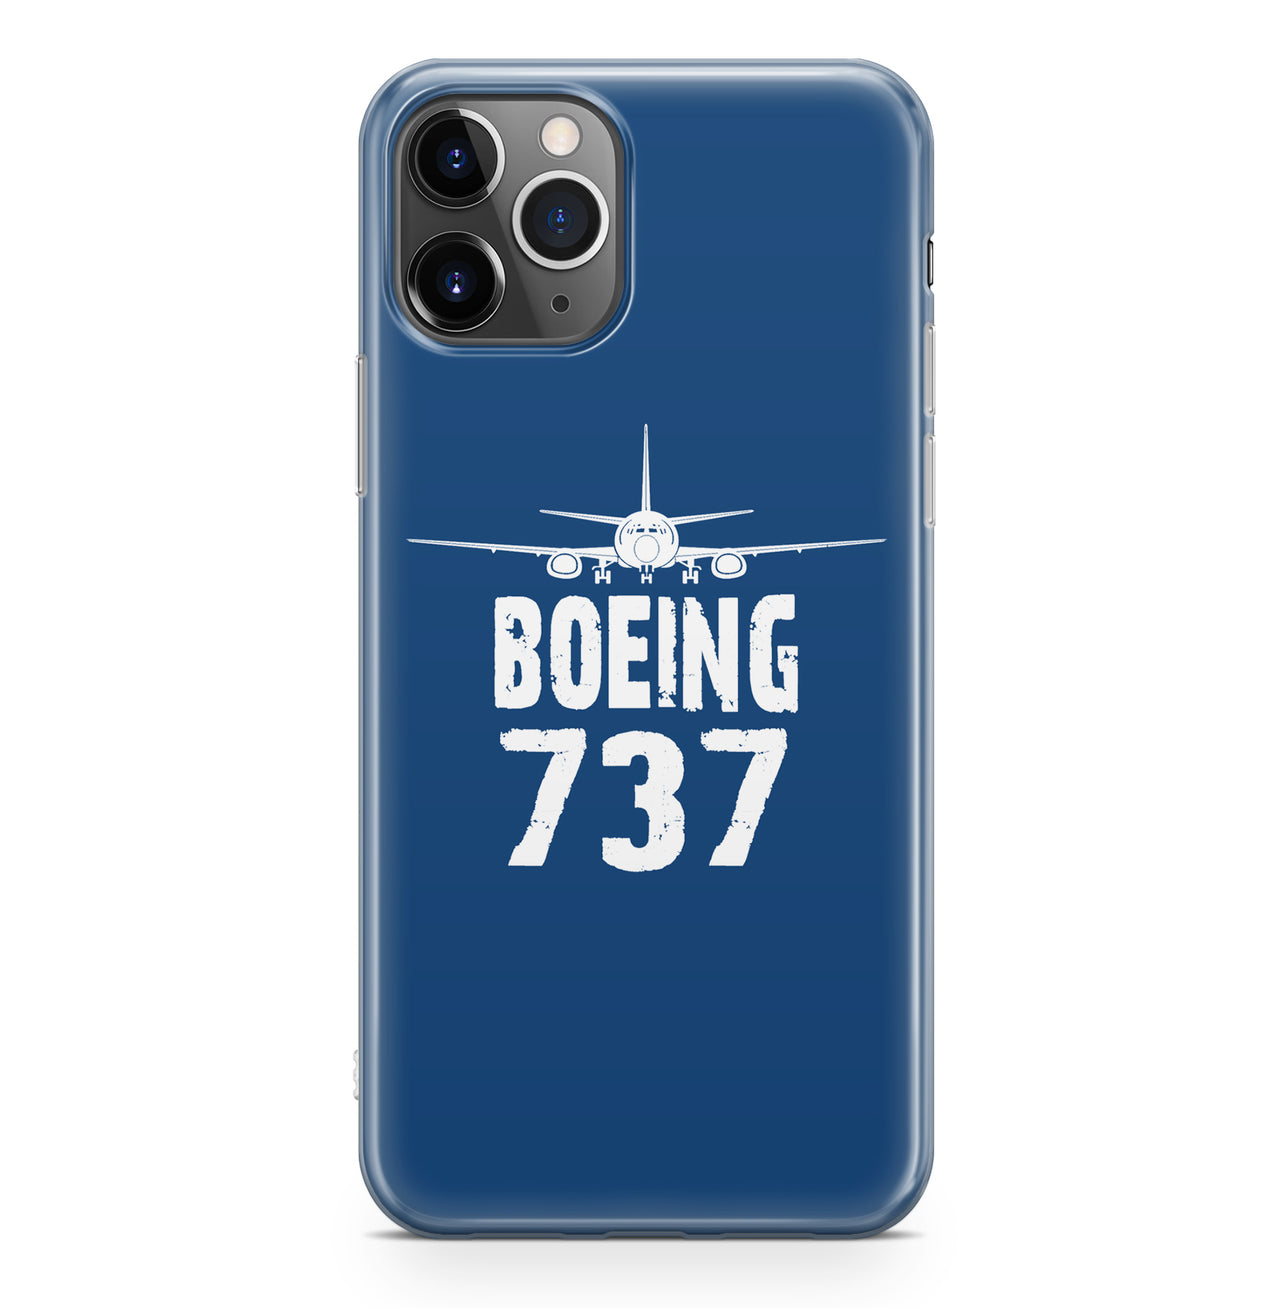 Boeing 737 & Plane Designed iPhone Cases